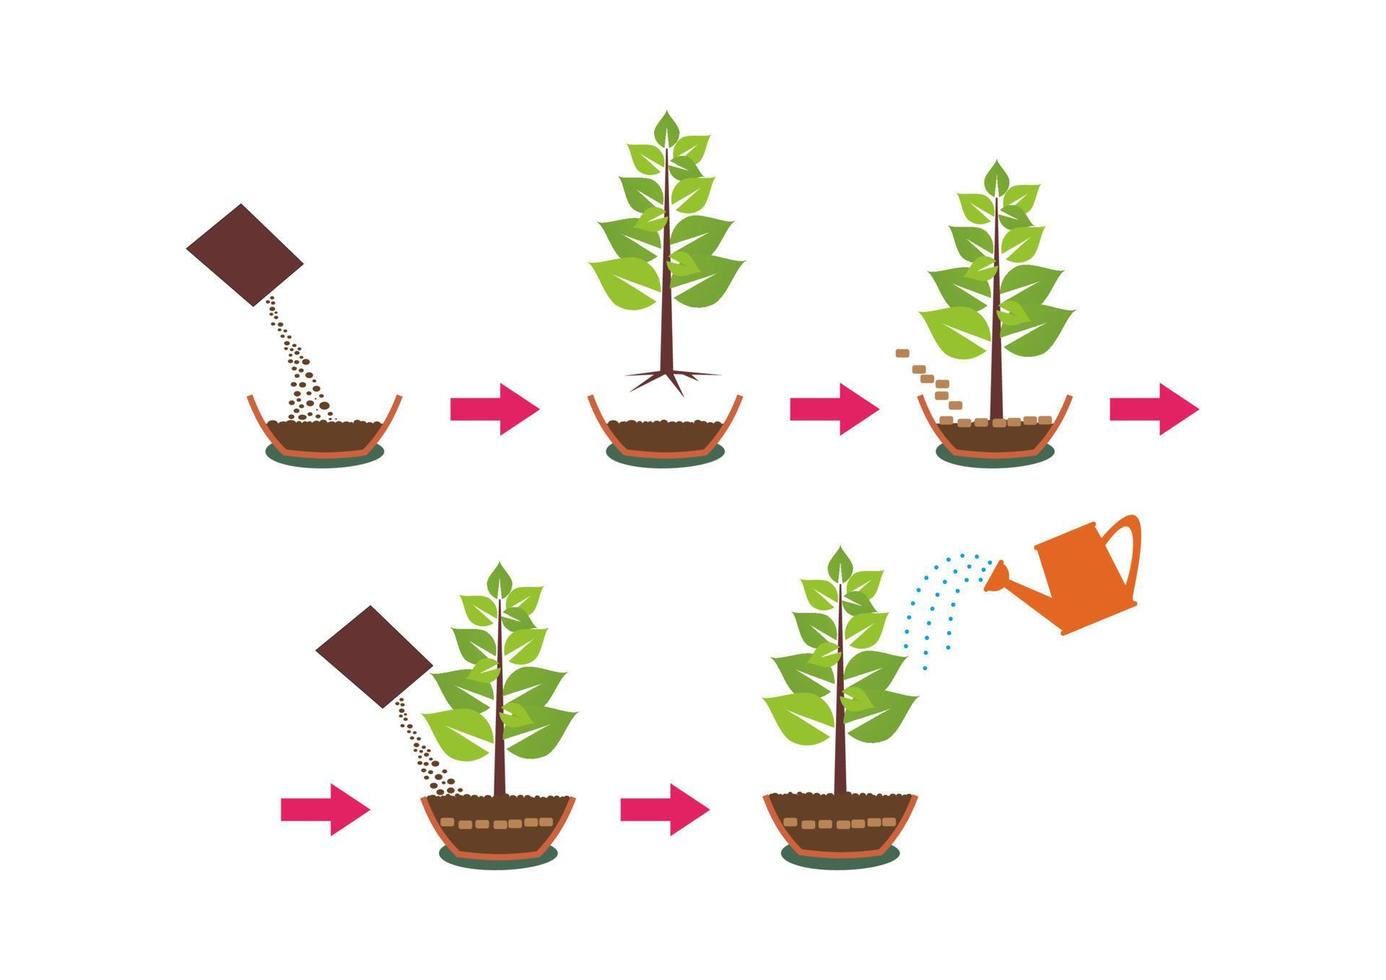 instrucción de poner y cultivar plantas con macetas de agua y semillas. instrucciones paso a paso para plantar semillas de plantas boceto vectorial del proceso de plantación. etapas de crecimiento de los árboles. vector